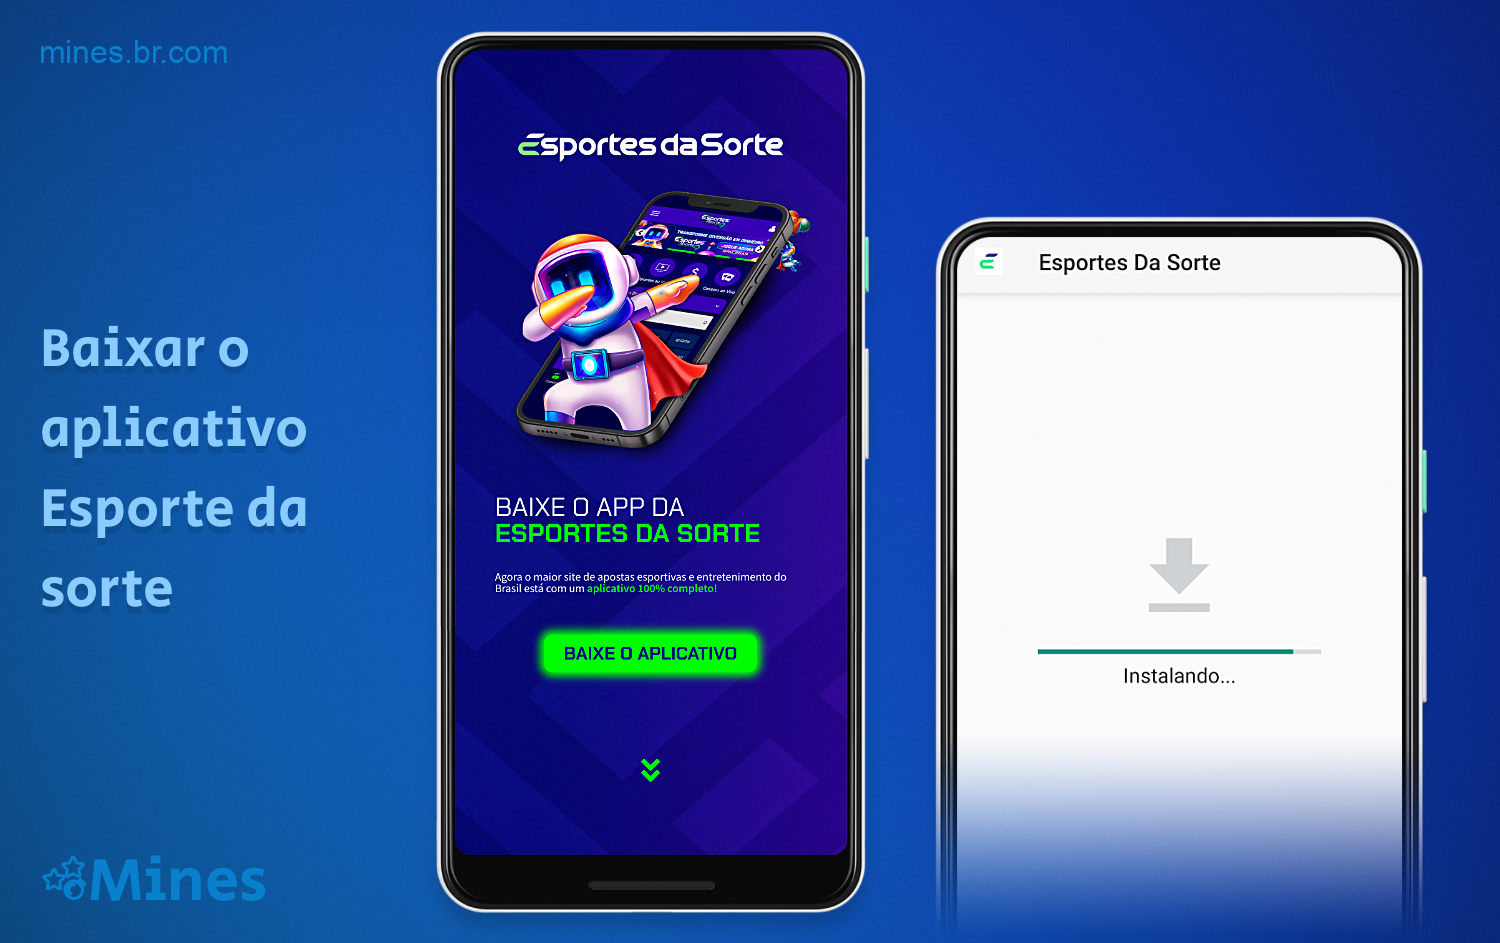 Para aqueles que desejam jogar Mines em seus smartphones, é recomendável fazer o download do aplicativo Esporte da sorte